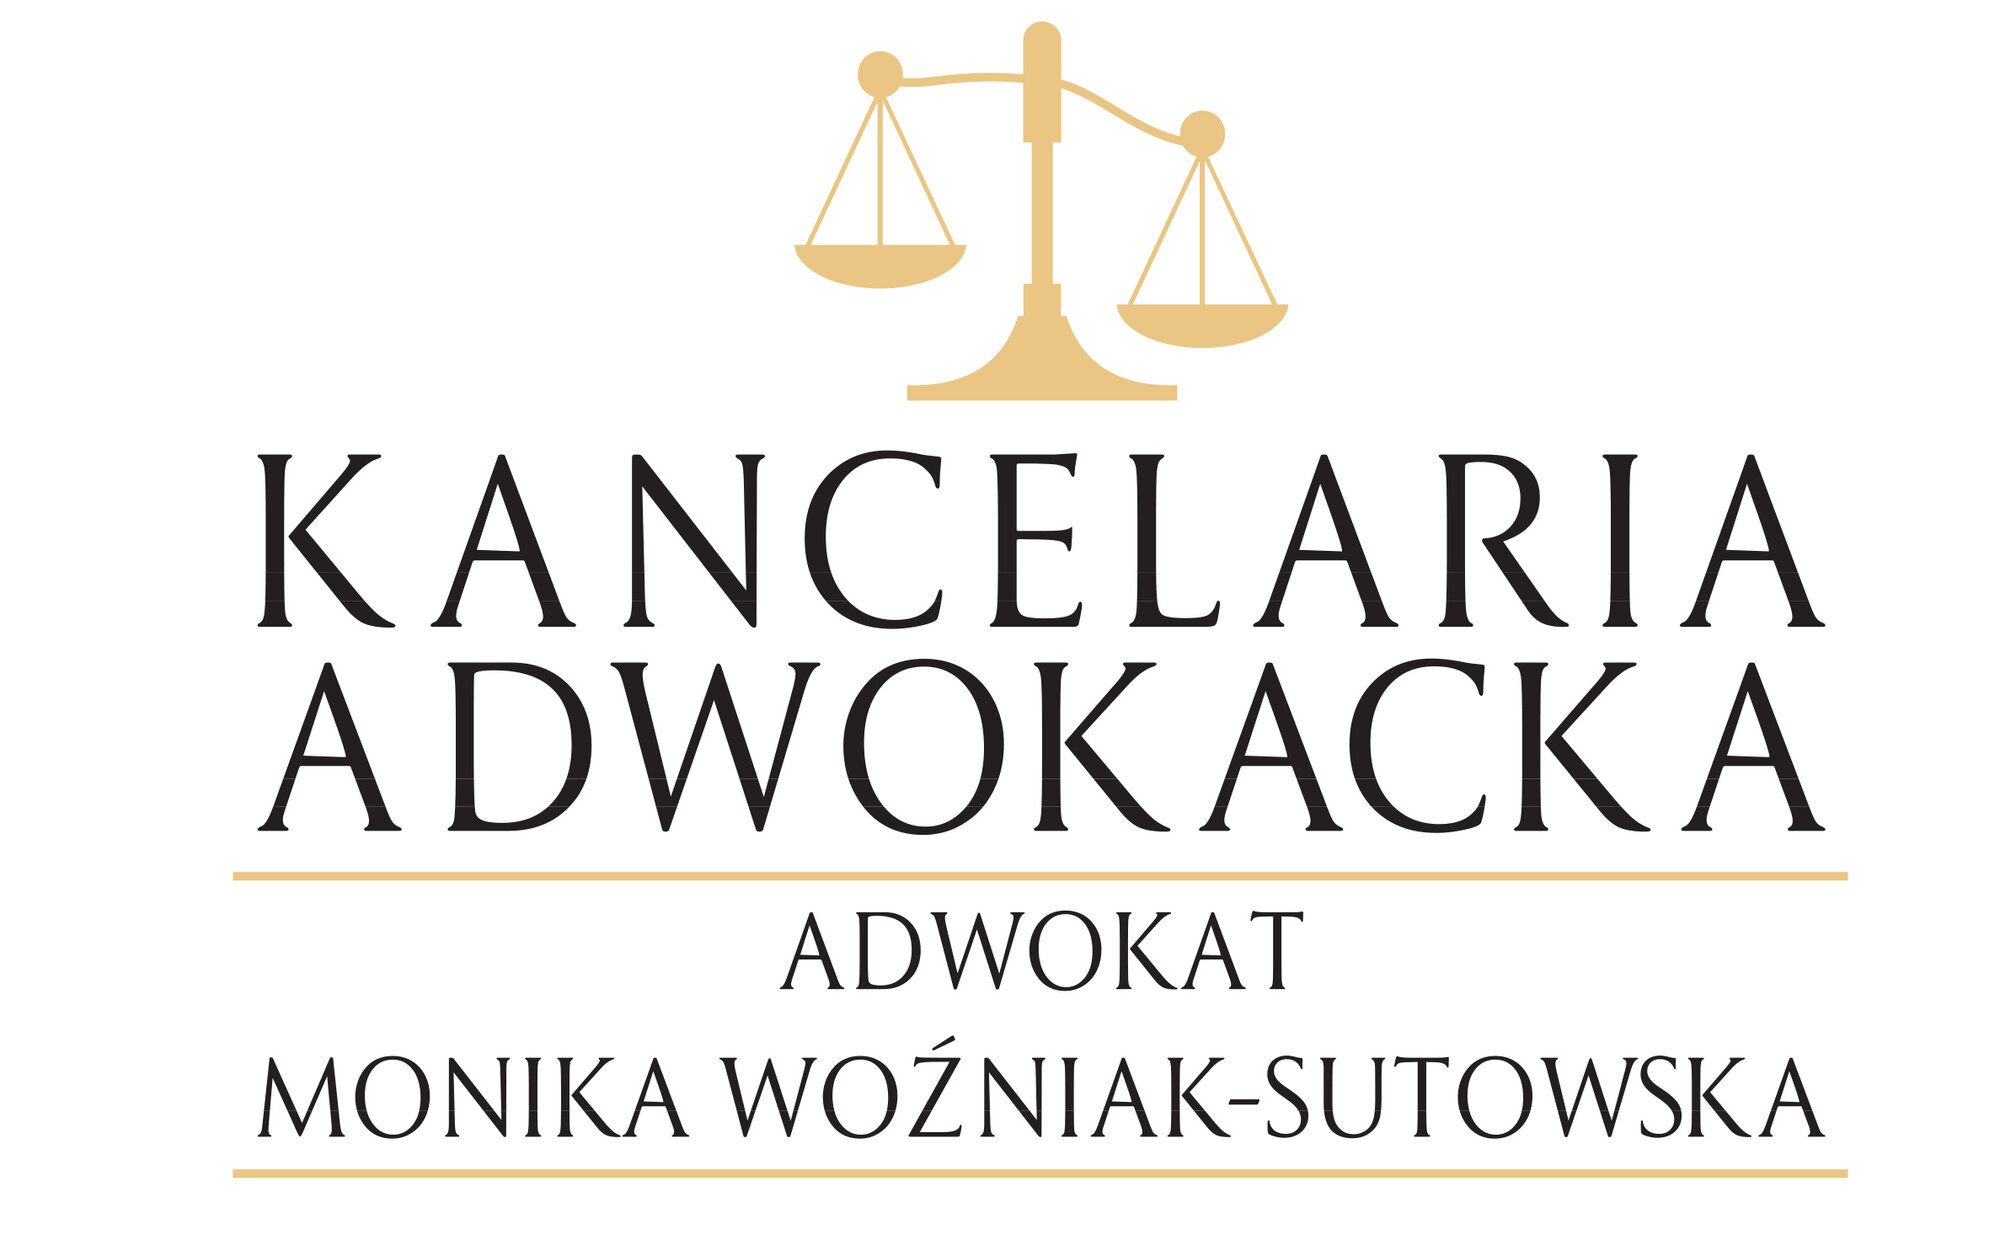 Kancelaria Adwokacka Adwokata Moniki Woźniak-Sutowskiej